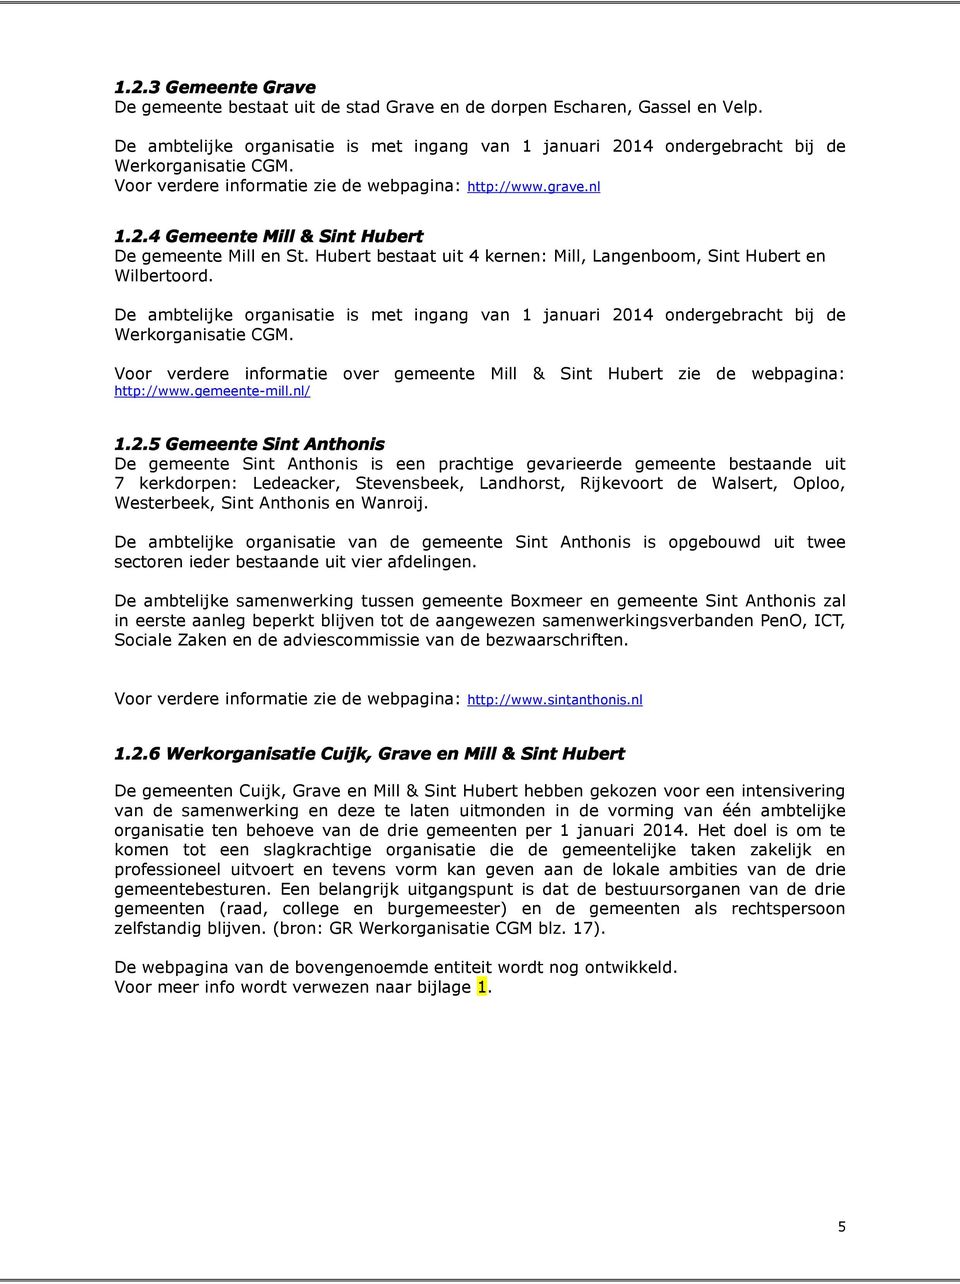 De ambtelijke organisatie is met ingang van 1 januari 2014 ondergebracht bij de Werkorganisatie CGM. Voor verdere informatie over gemeente Mill & Sint Hubert http://www.gemeente-mill.